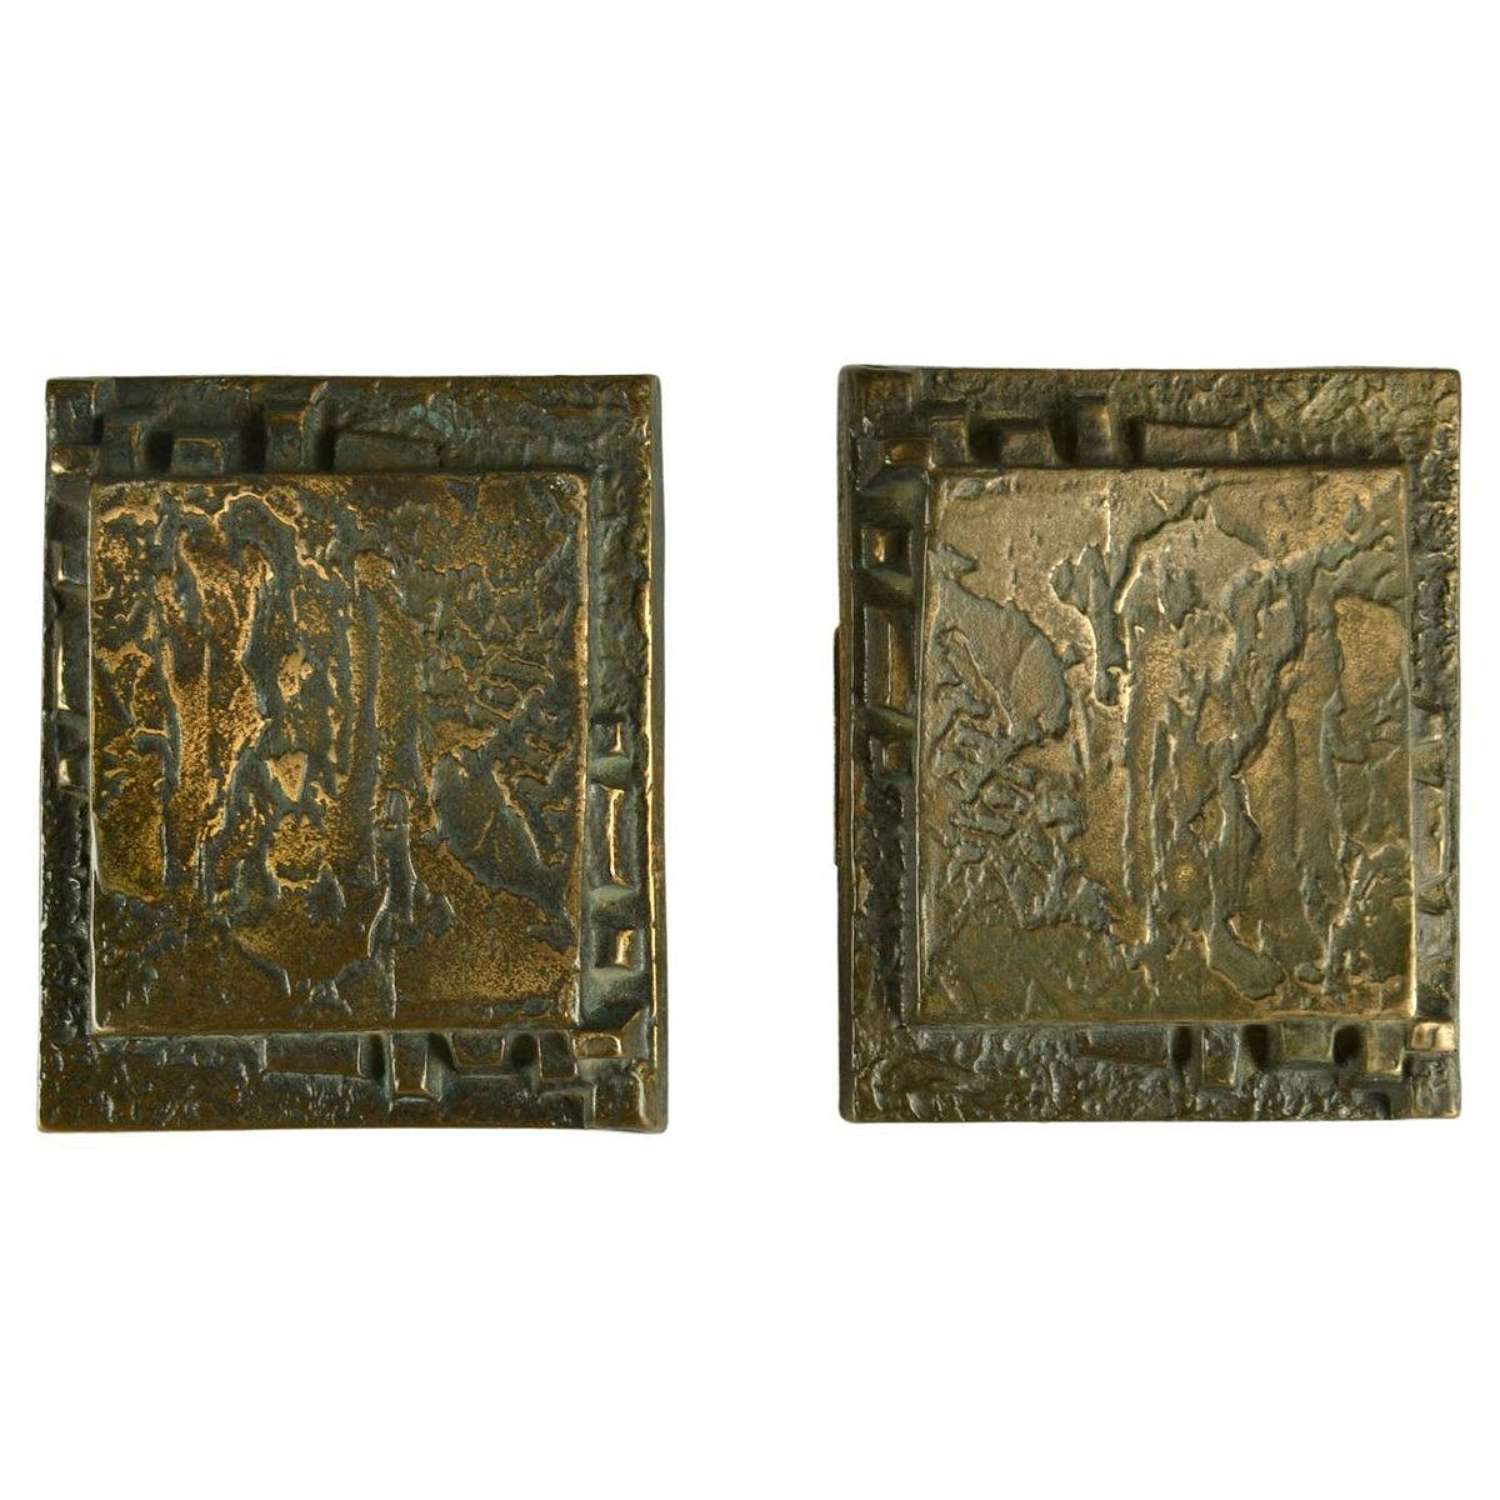 Pair of Bronze Push Pull Door Handles with Brutalist Relief